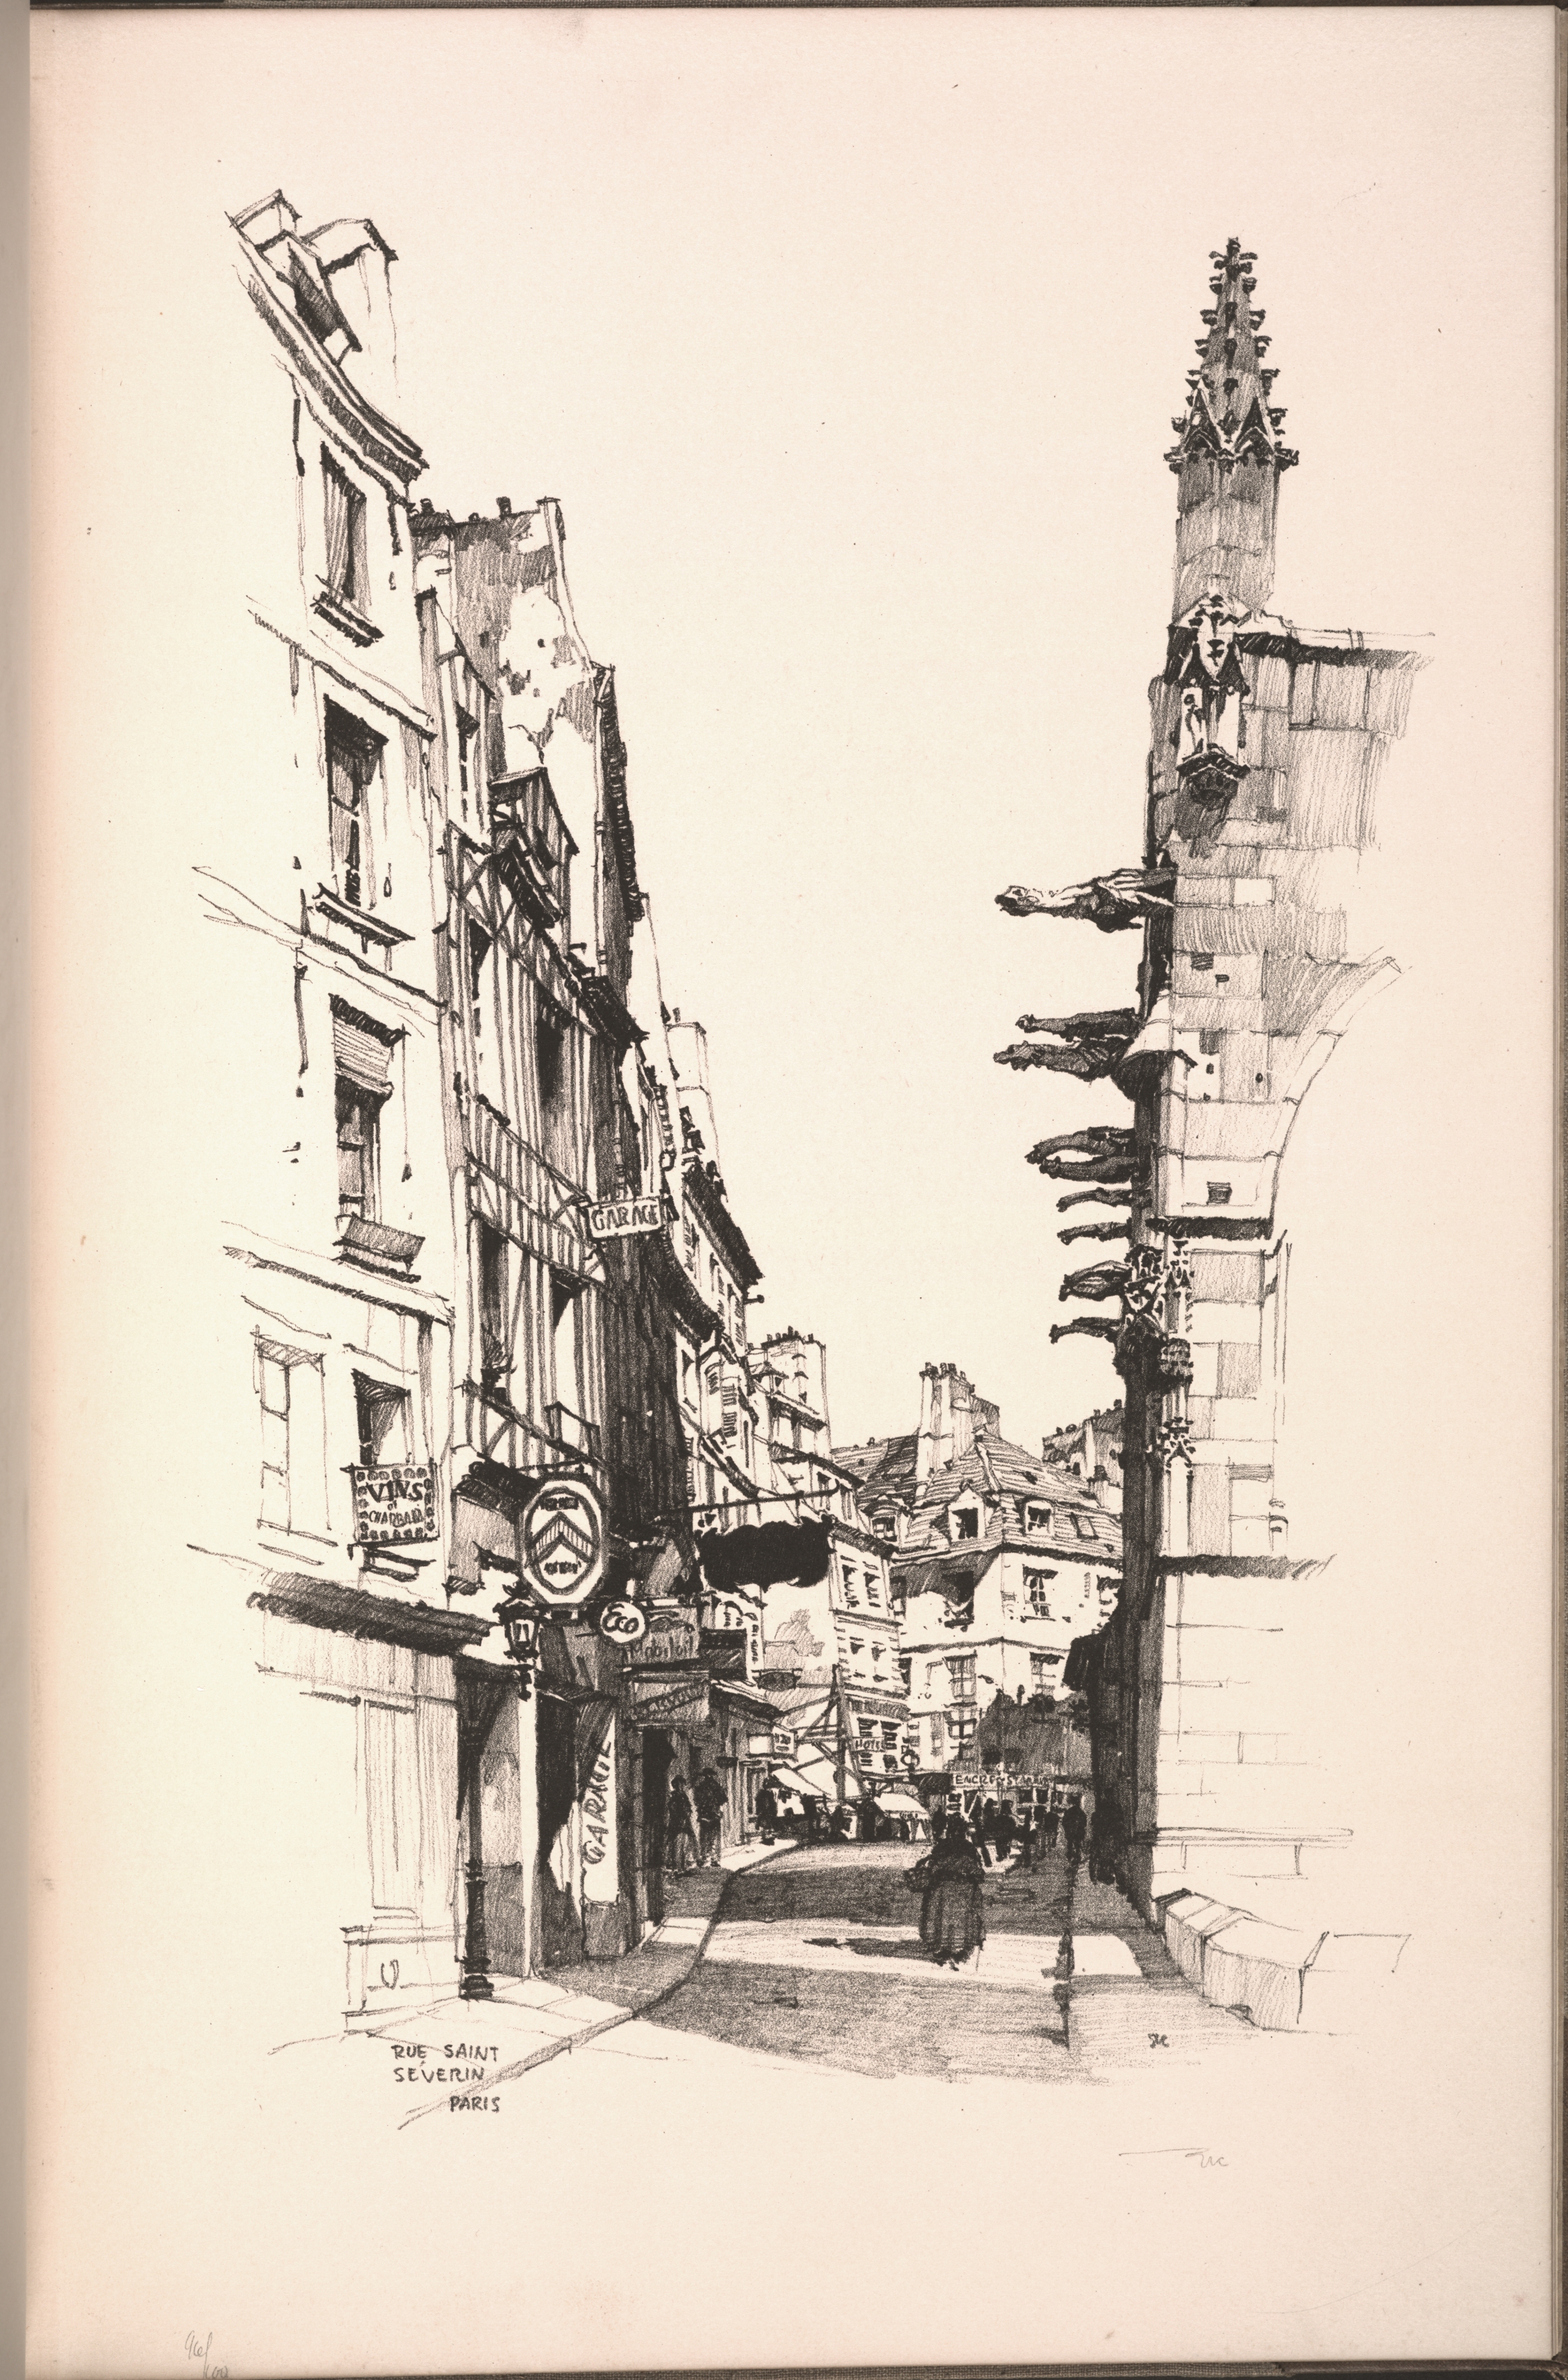 Twenty Lithographs of Old Paris: Rue Saint Séverin, Paris